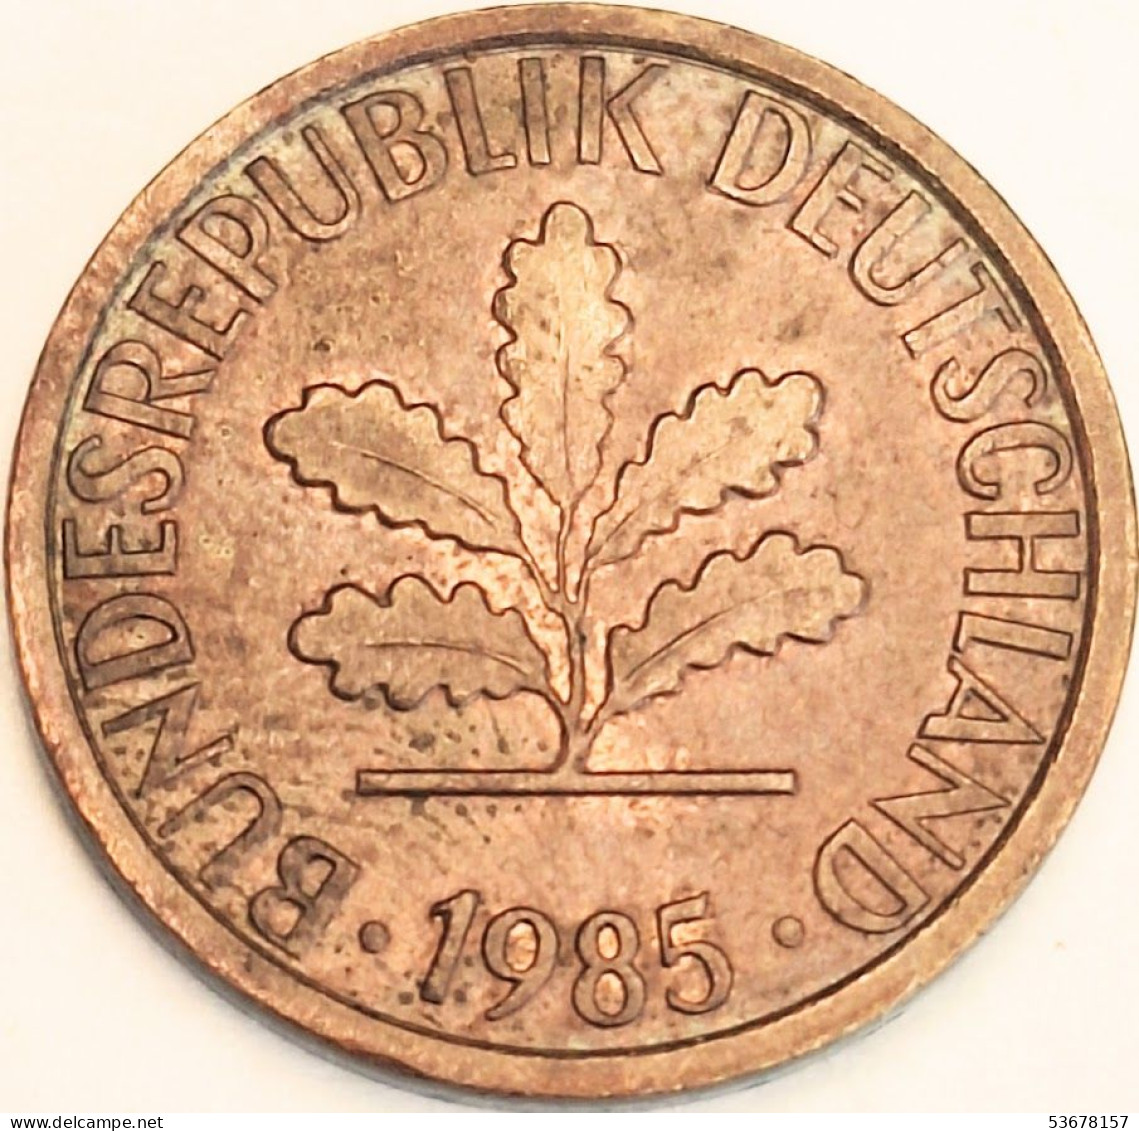 Germany Federal Republic - Pfennig 1985 G, KM# 105 (#4496) - 1 Pfennig